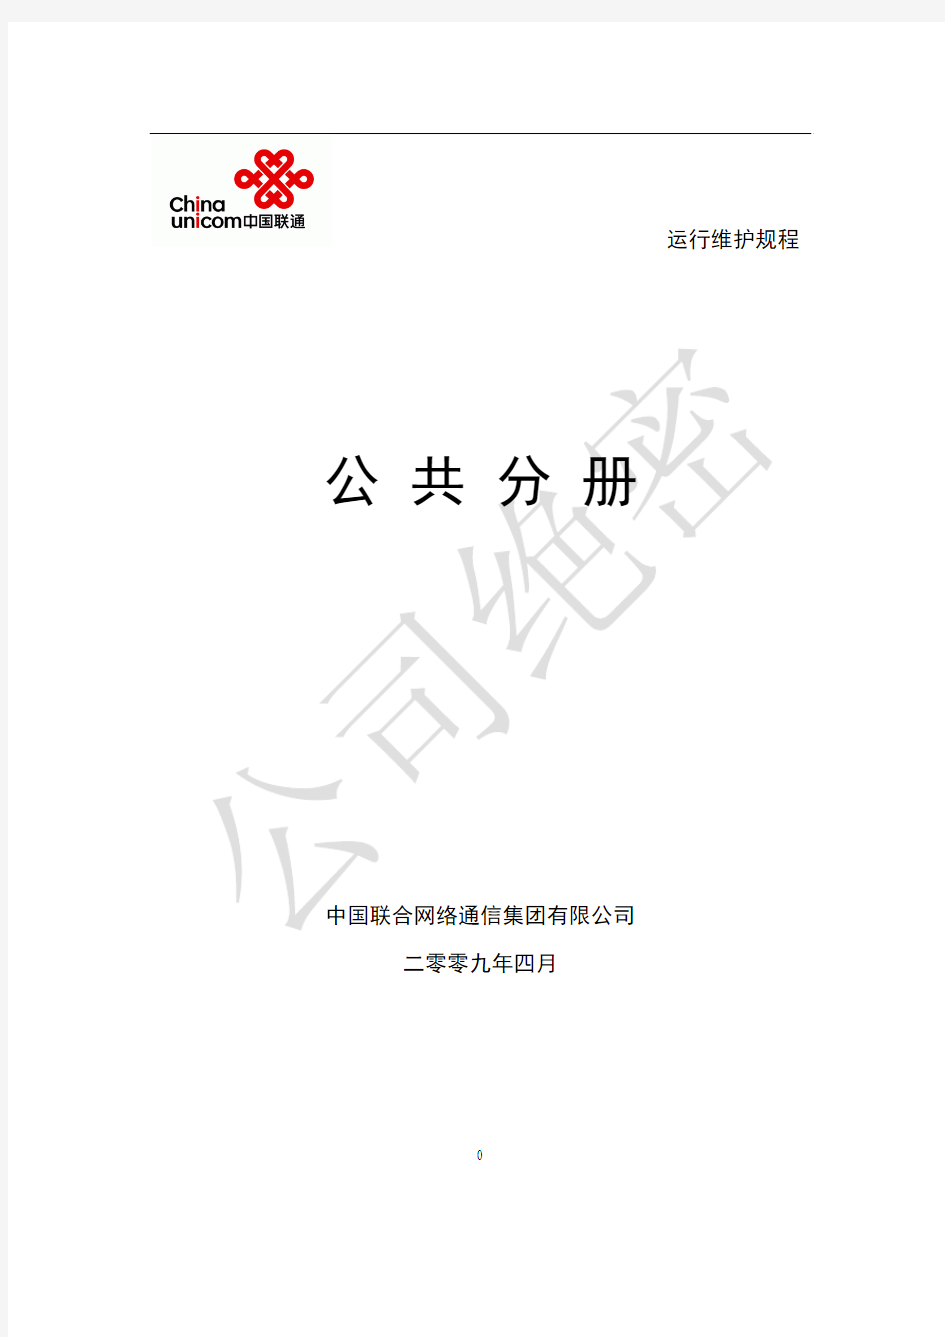 中国联通通信网络运行维护规程-公共分册